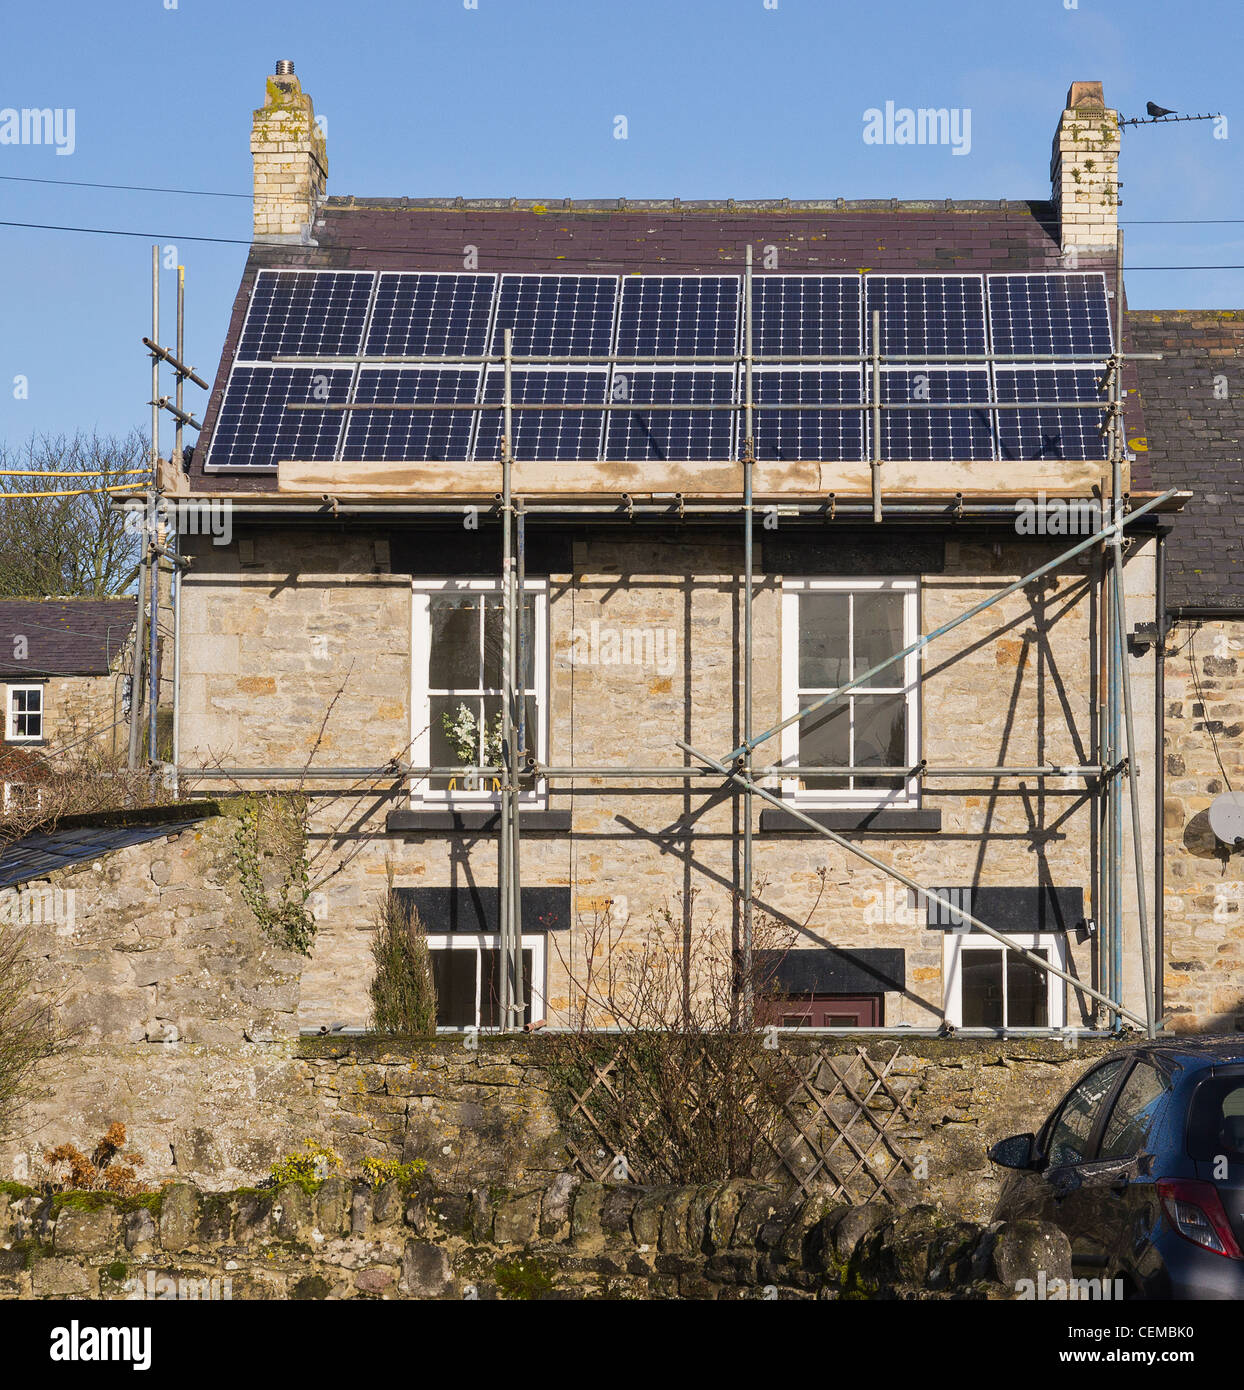 Des panneaux solaires installés sur l'aspect du sud d'une maison au Yorkshire. Travaux réalisés en février 2012. Banque D'Images